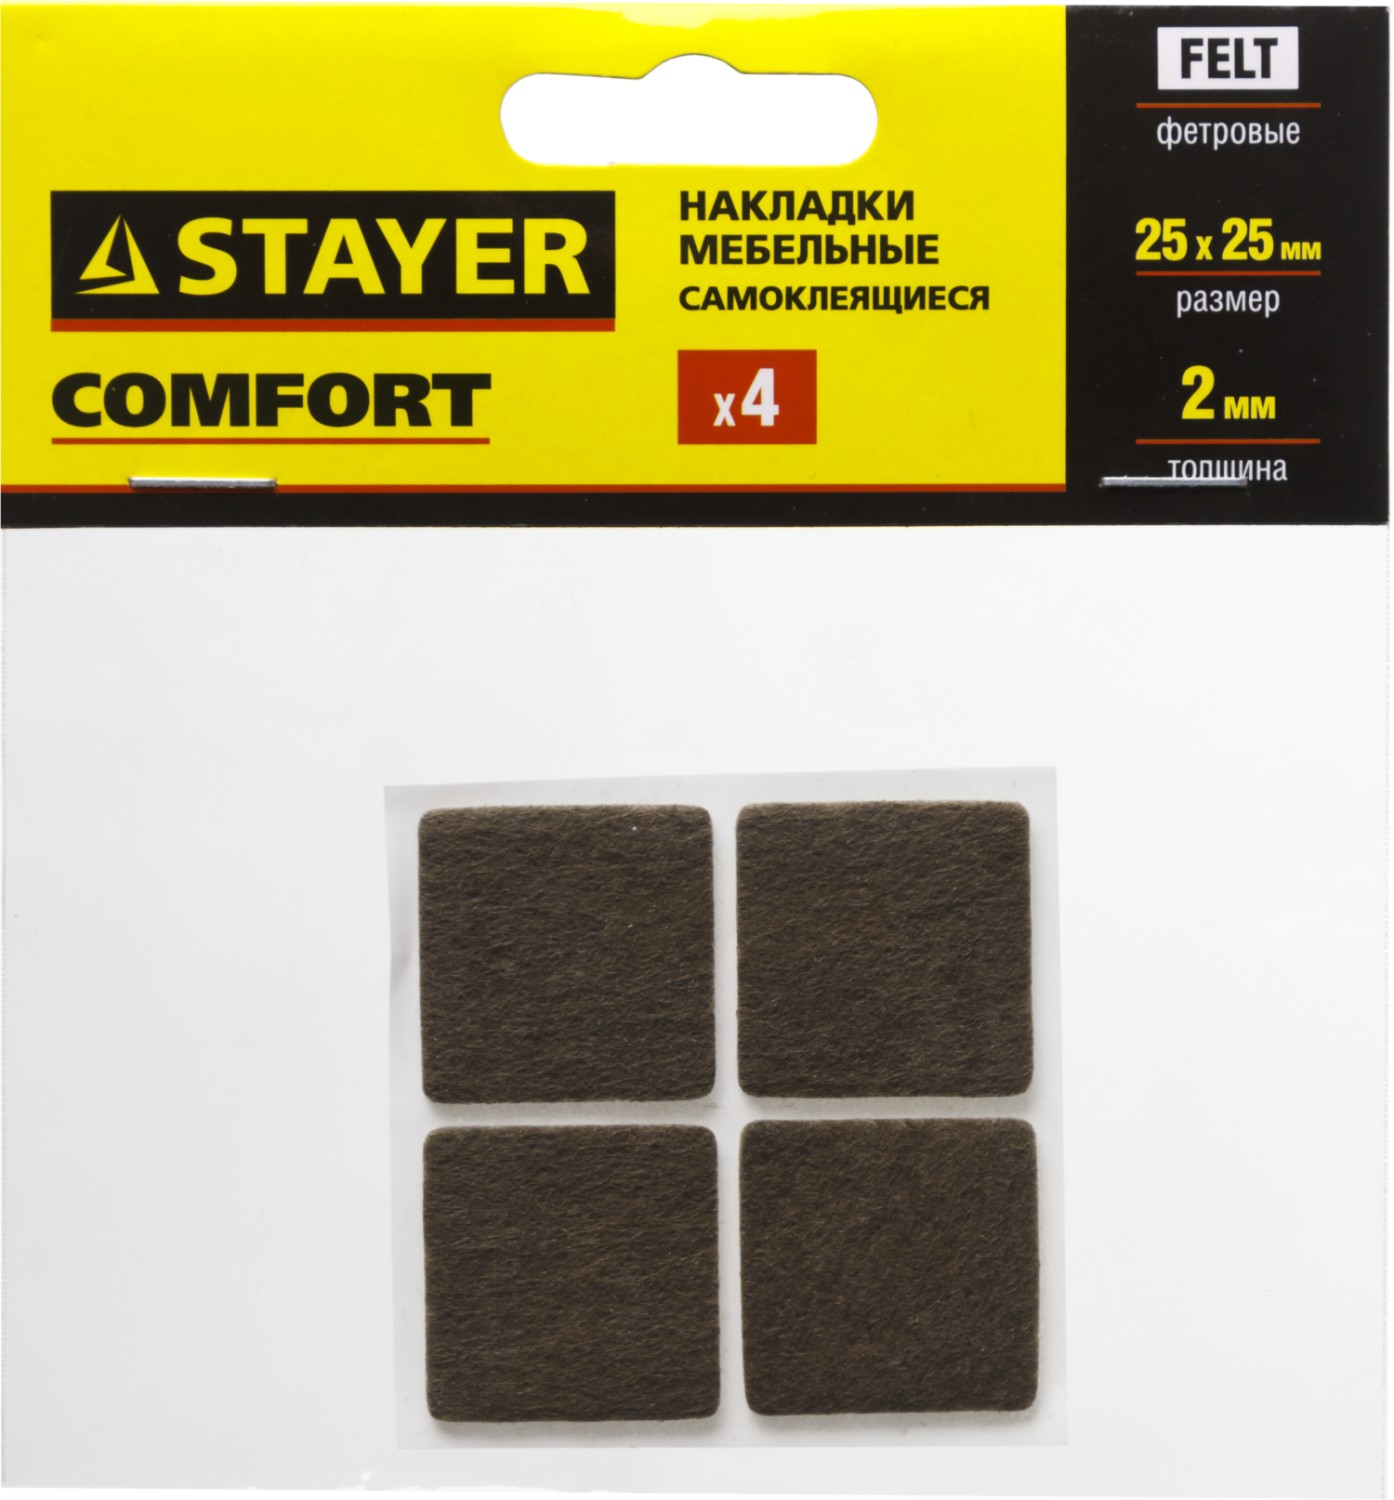 Накладки STAYER "COMFORT" на мебельные ножки, самоклеящиеся, фетровые, коричневые, квадратные - 25*25 мм, 4 шт